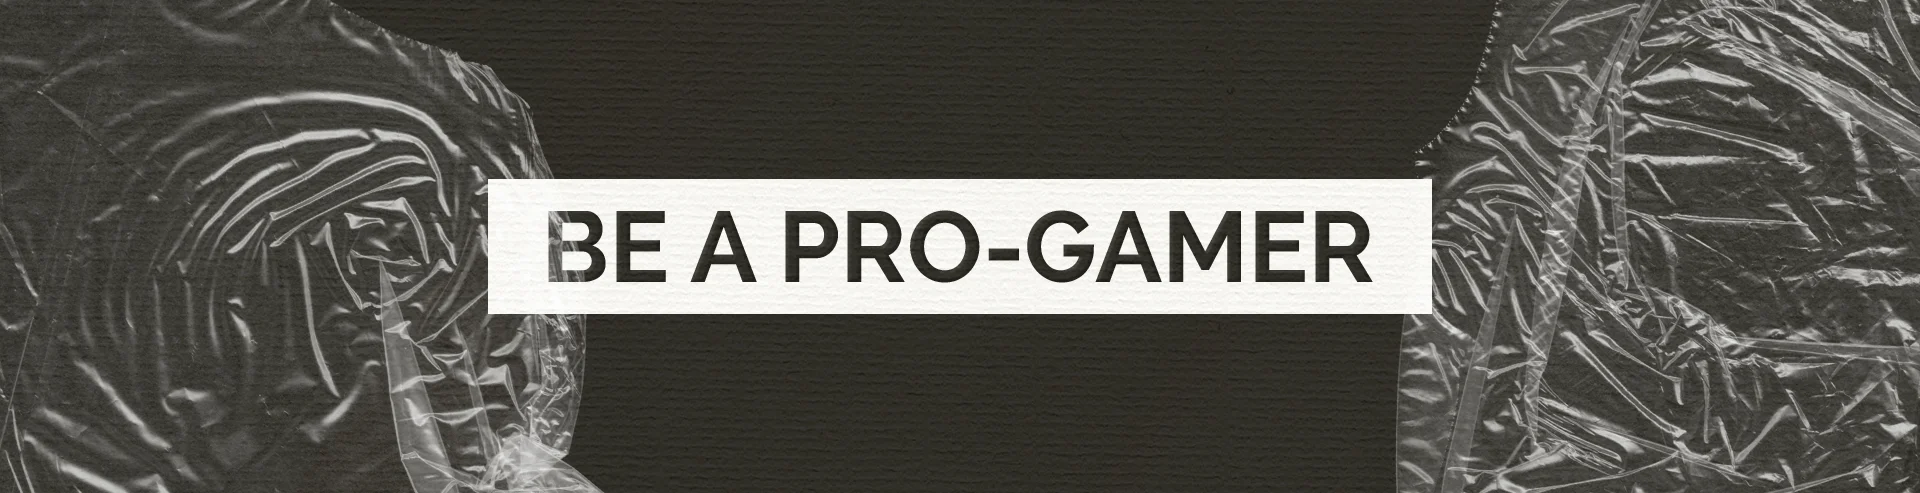 VM-Hero-Gift-Idea-Be-a-Pro-Gamer-1920x493.webp